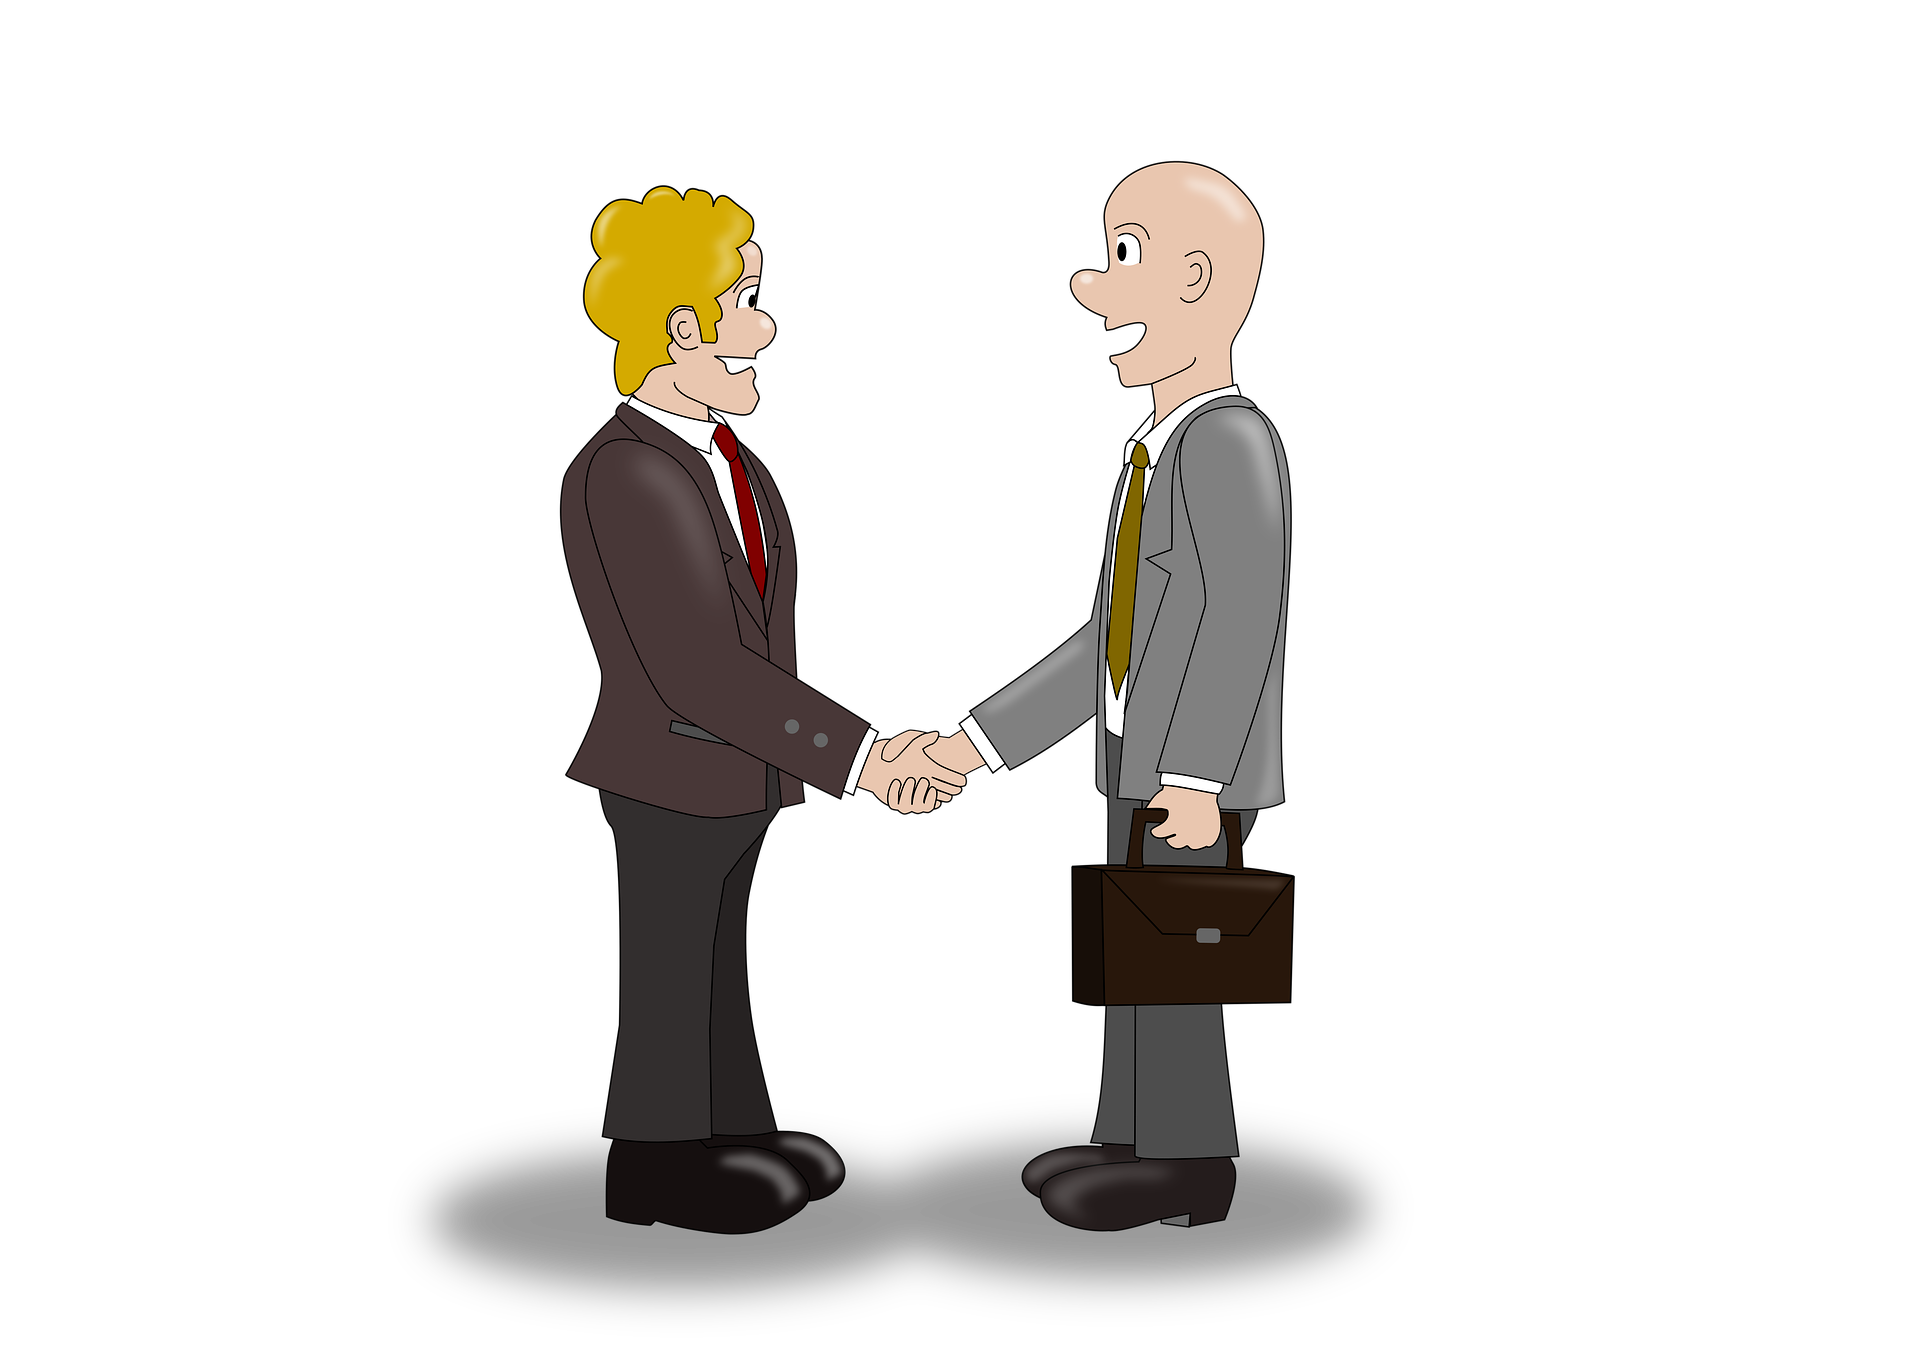 Image of businessmen shaking hands